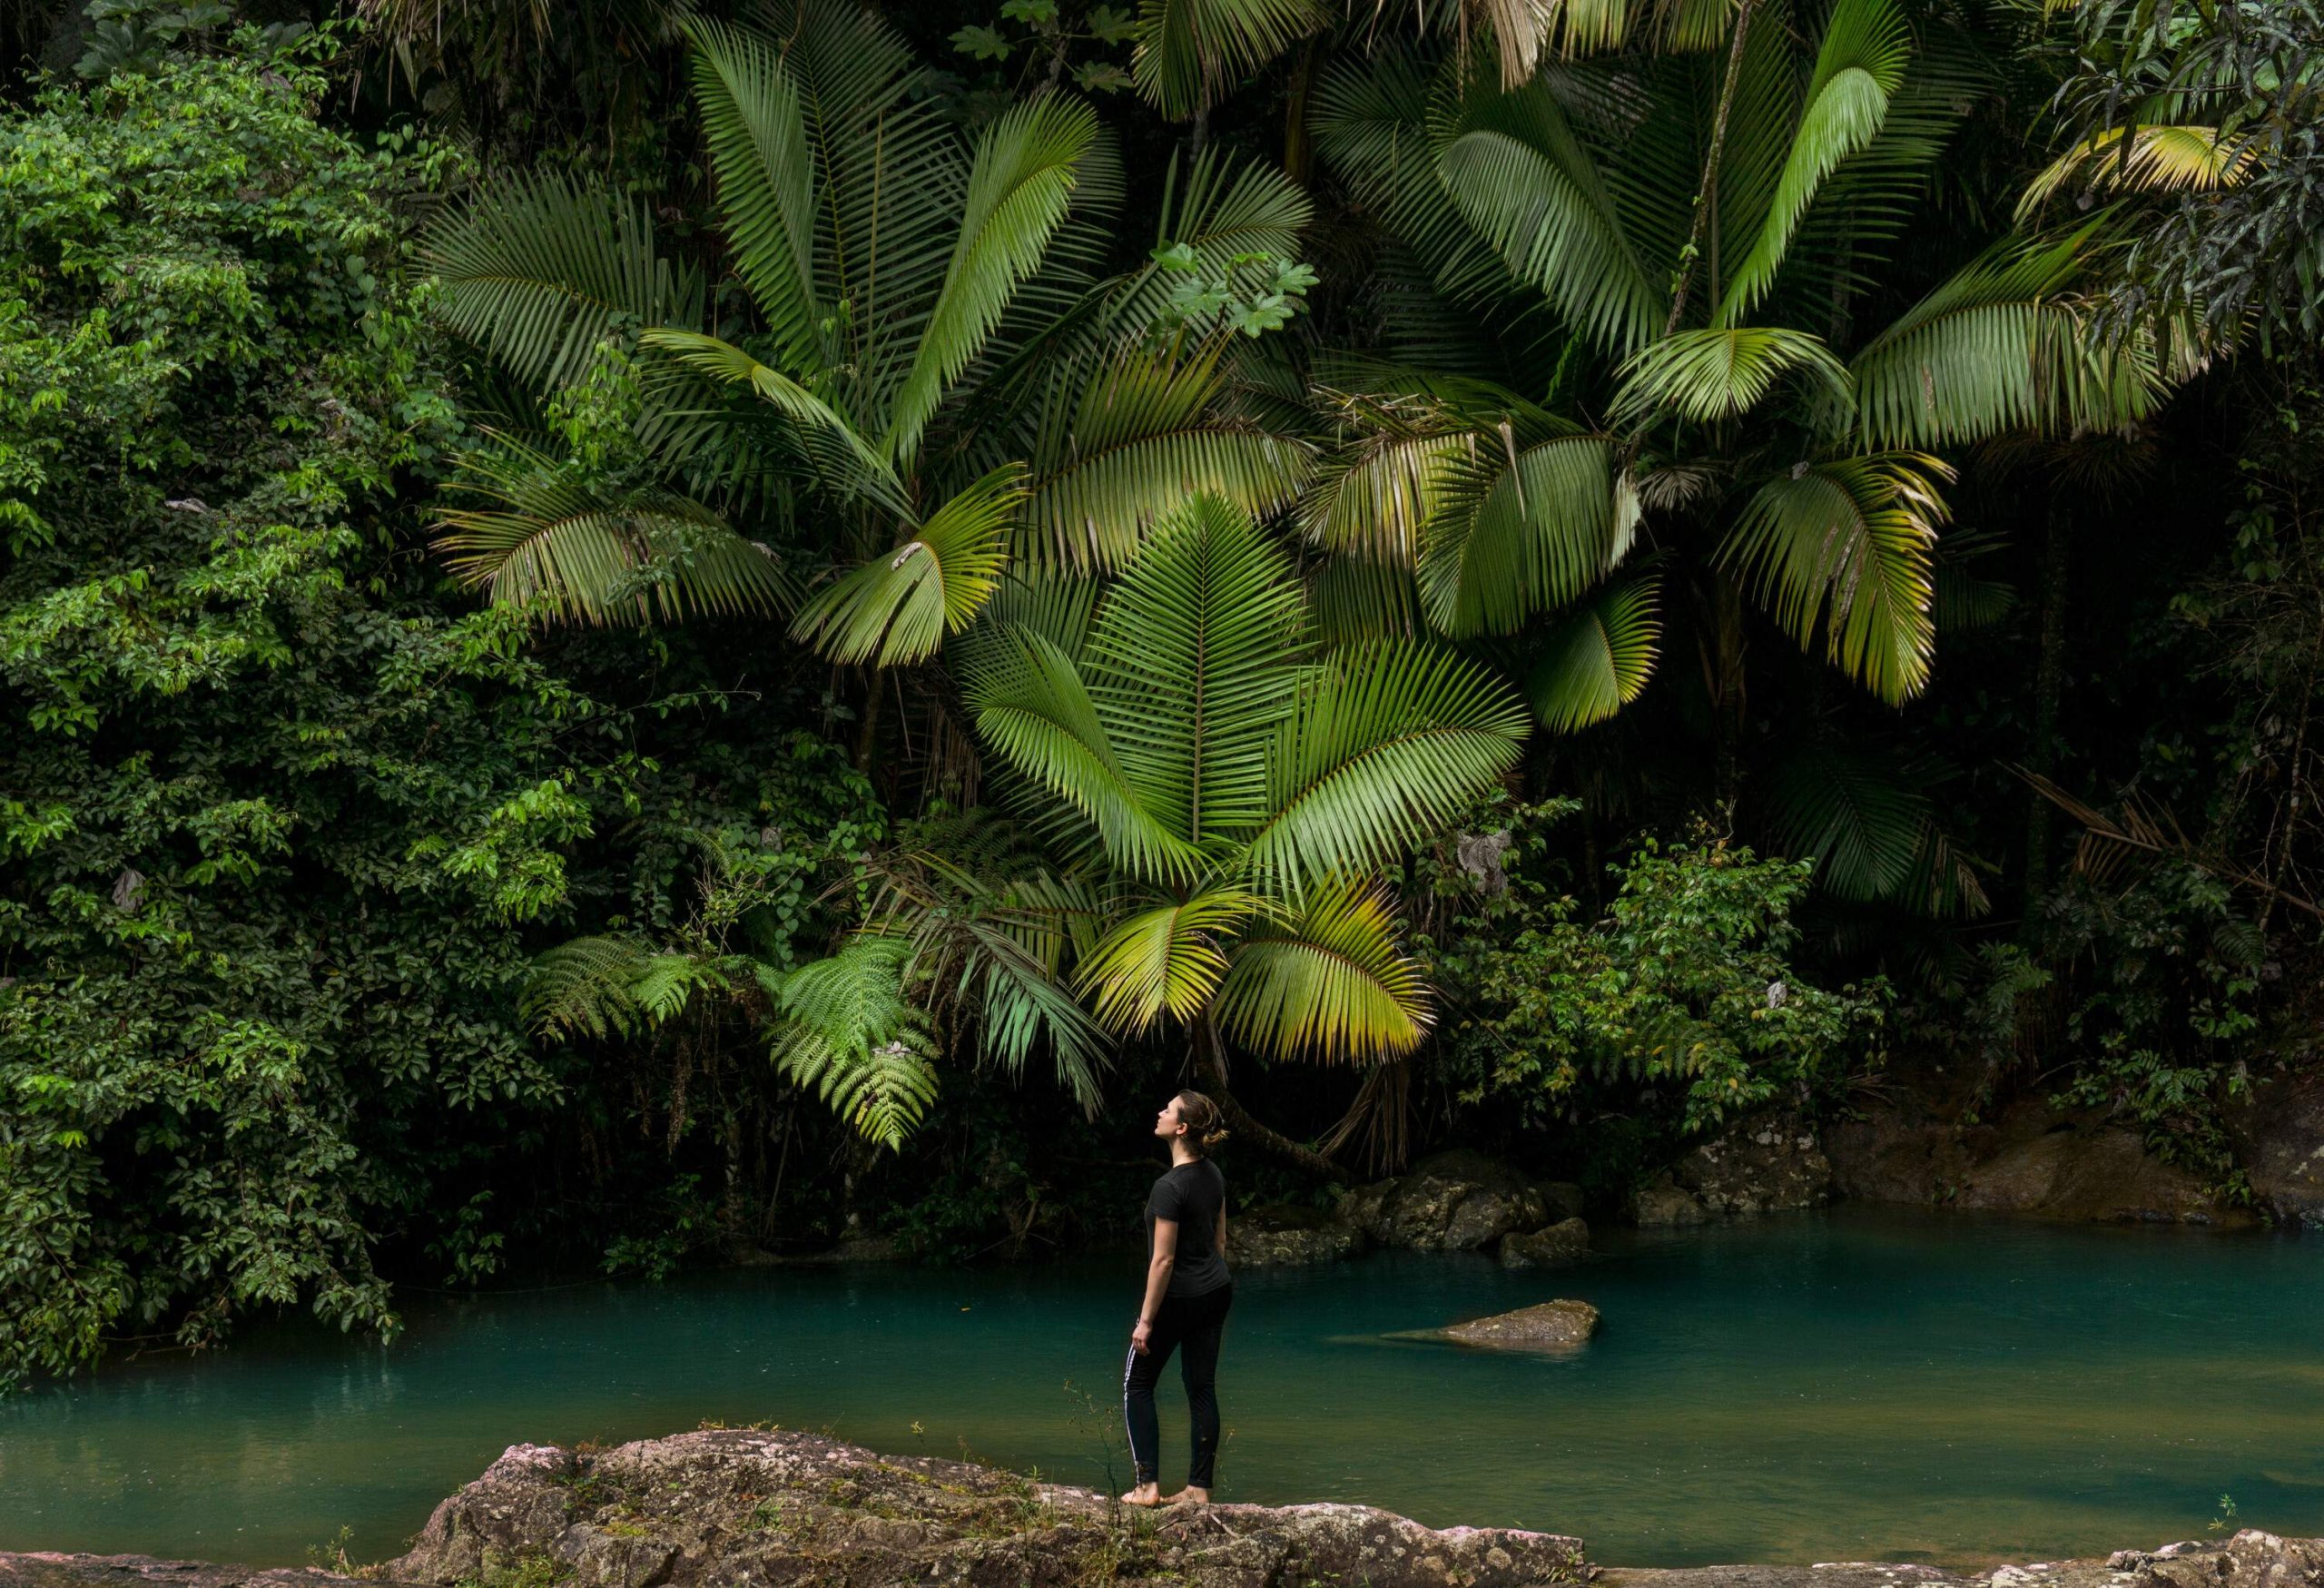 Puerto Rico, El Yunque National Forest